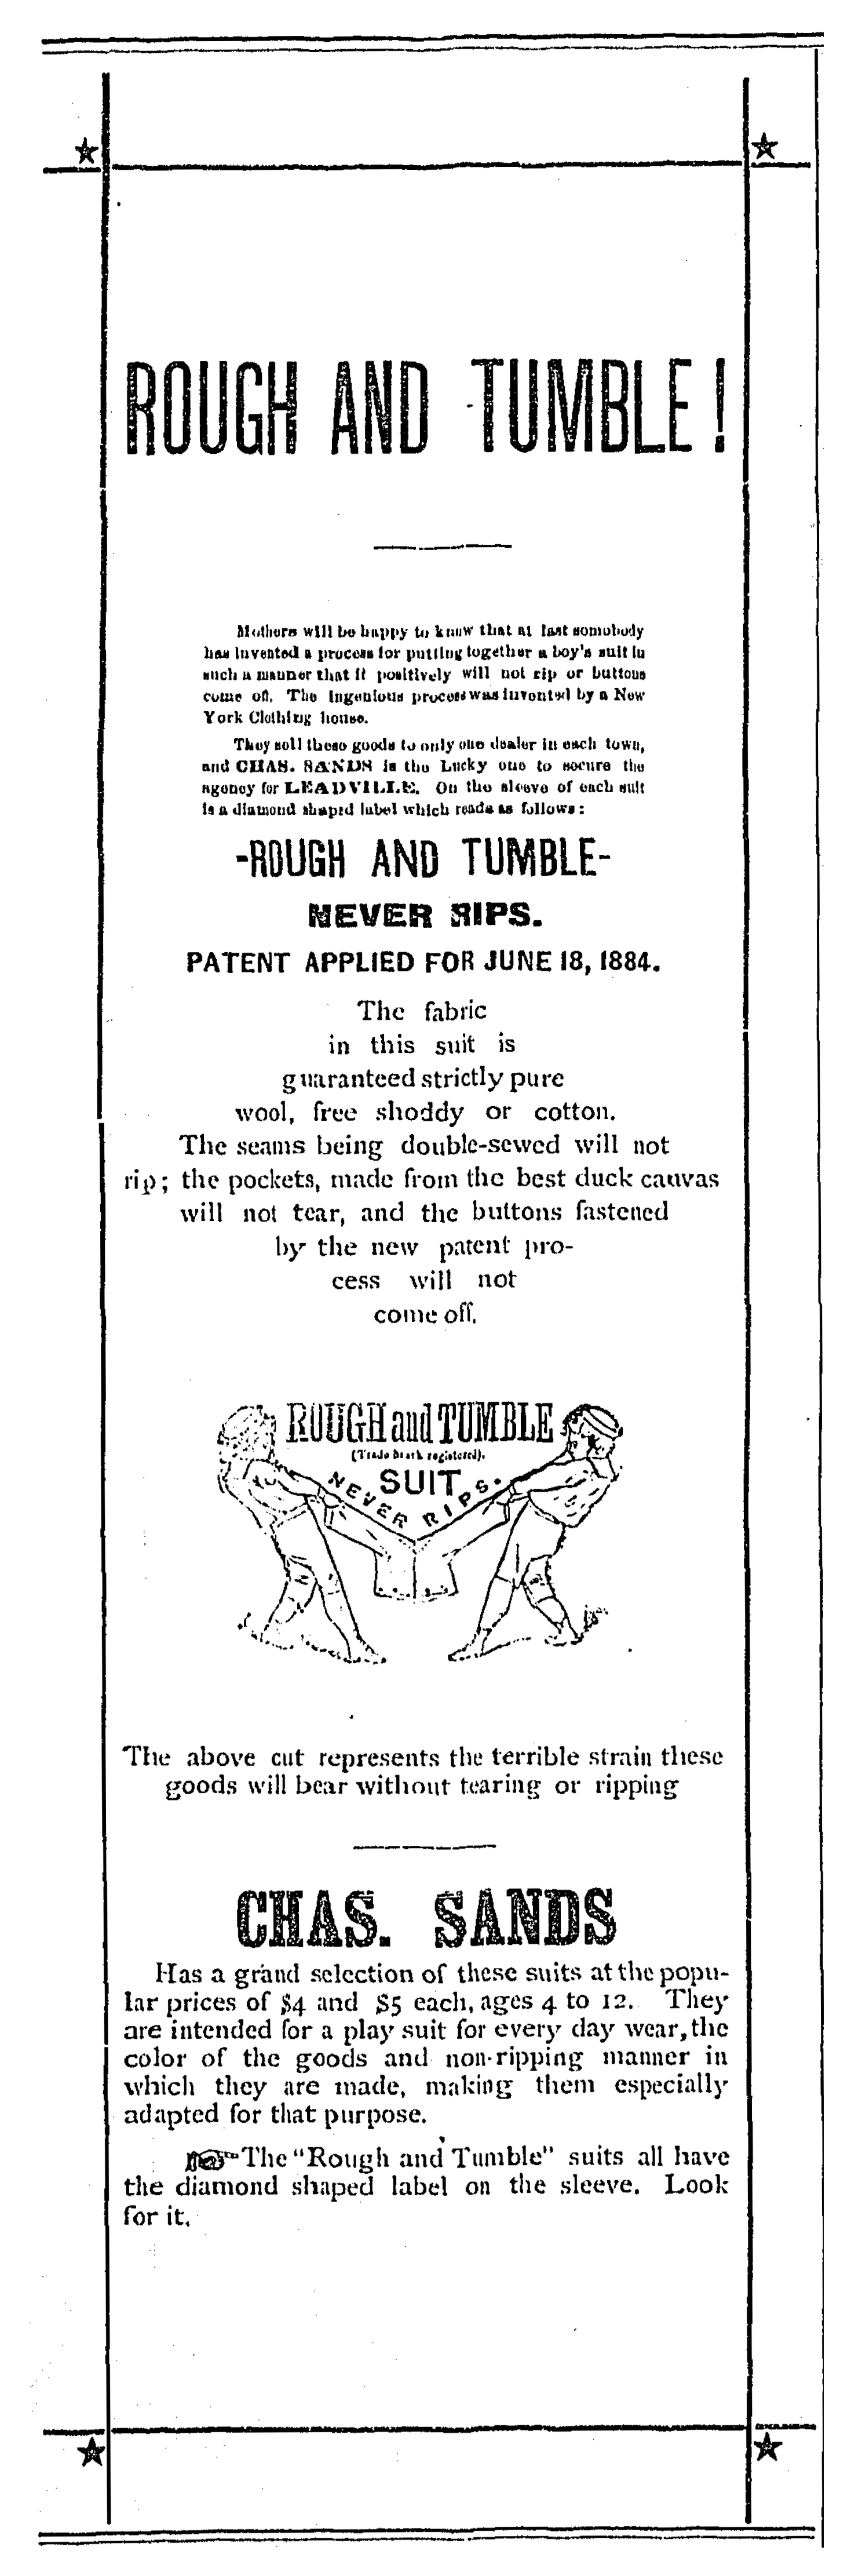 The Leadville Herald, April 9, 1885